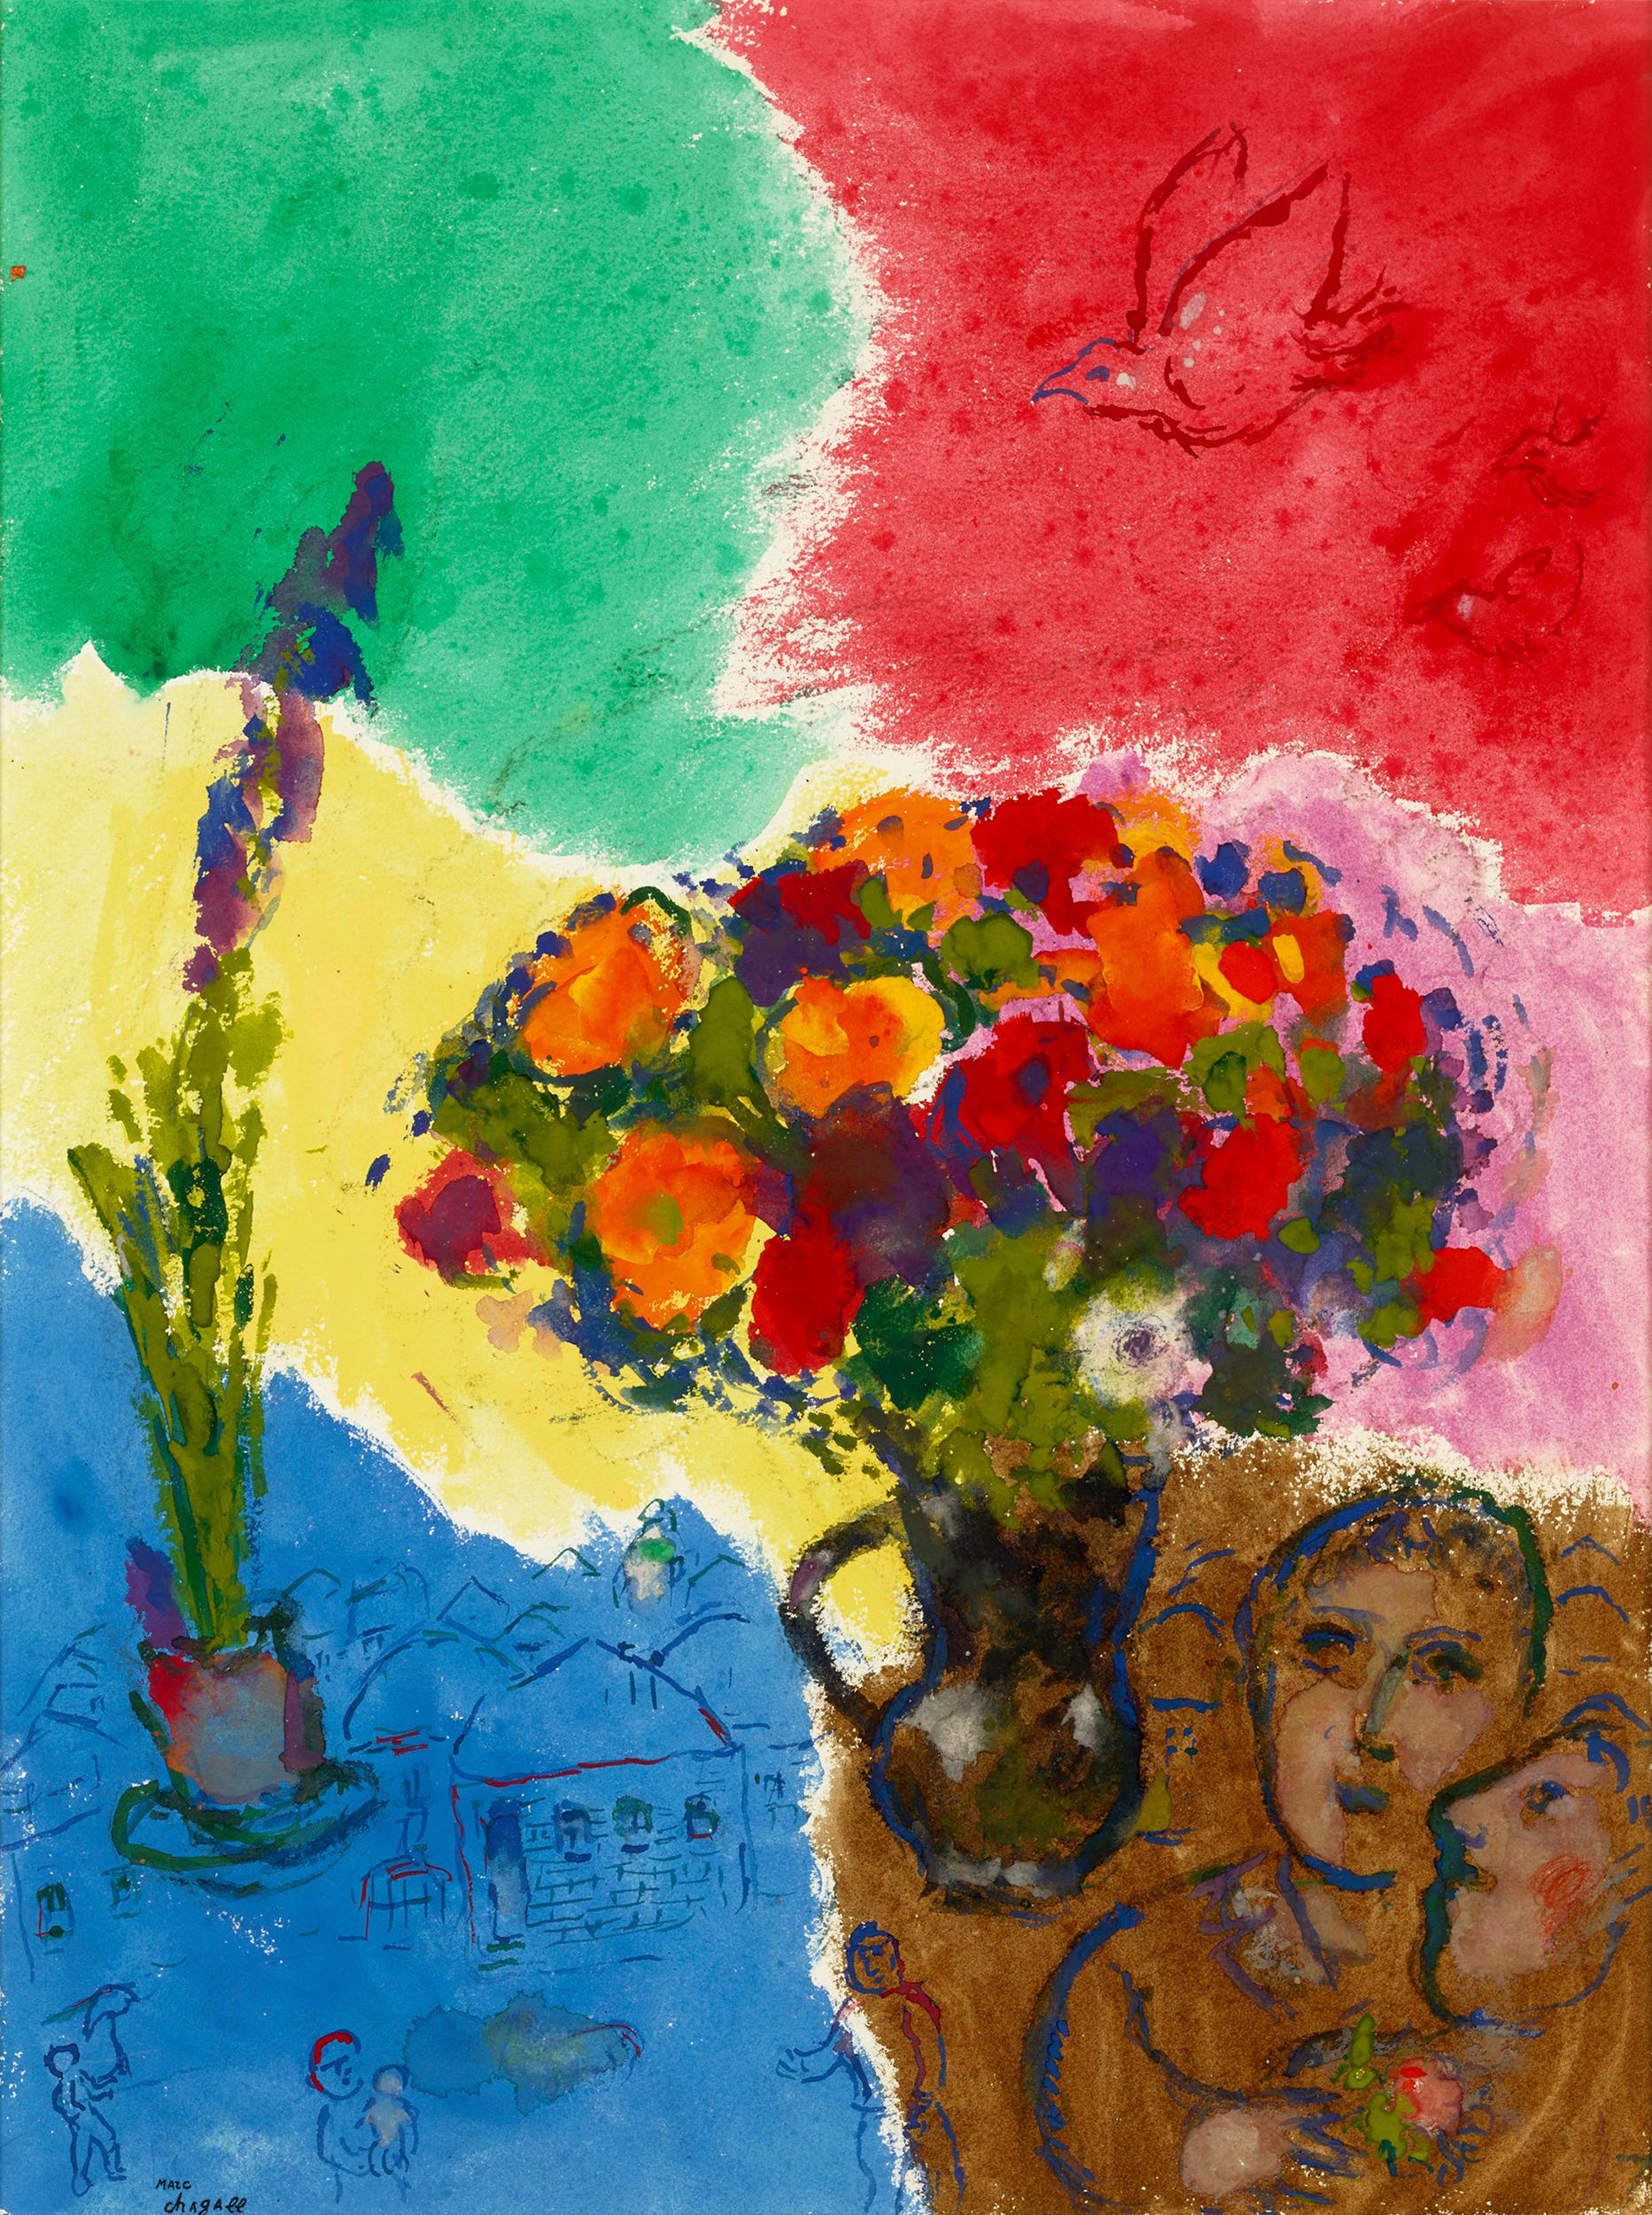 Marc Chagall
1887-1985  Russie

Les fleurs des amoureux sur fond multicolore
(Fleurs d'amoureux sur fond multicolore)

Estampillé avec la signature "Marc Chagall" (en bas à gauche)
Gouache, tempera et crayon lithographique sur papier

"On pourrait